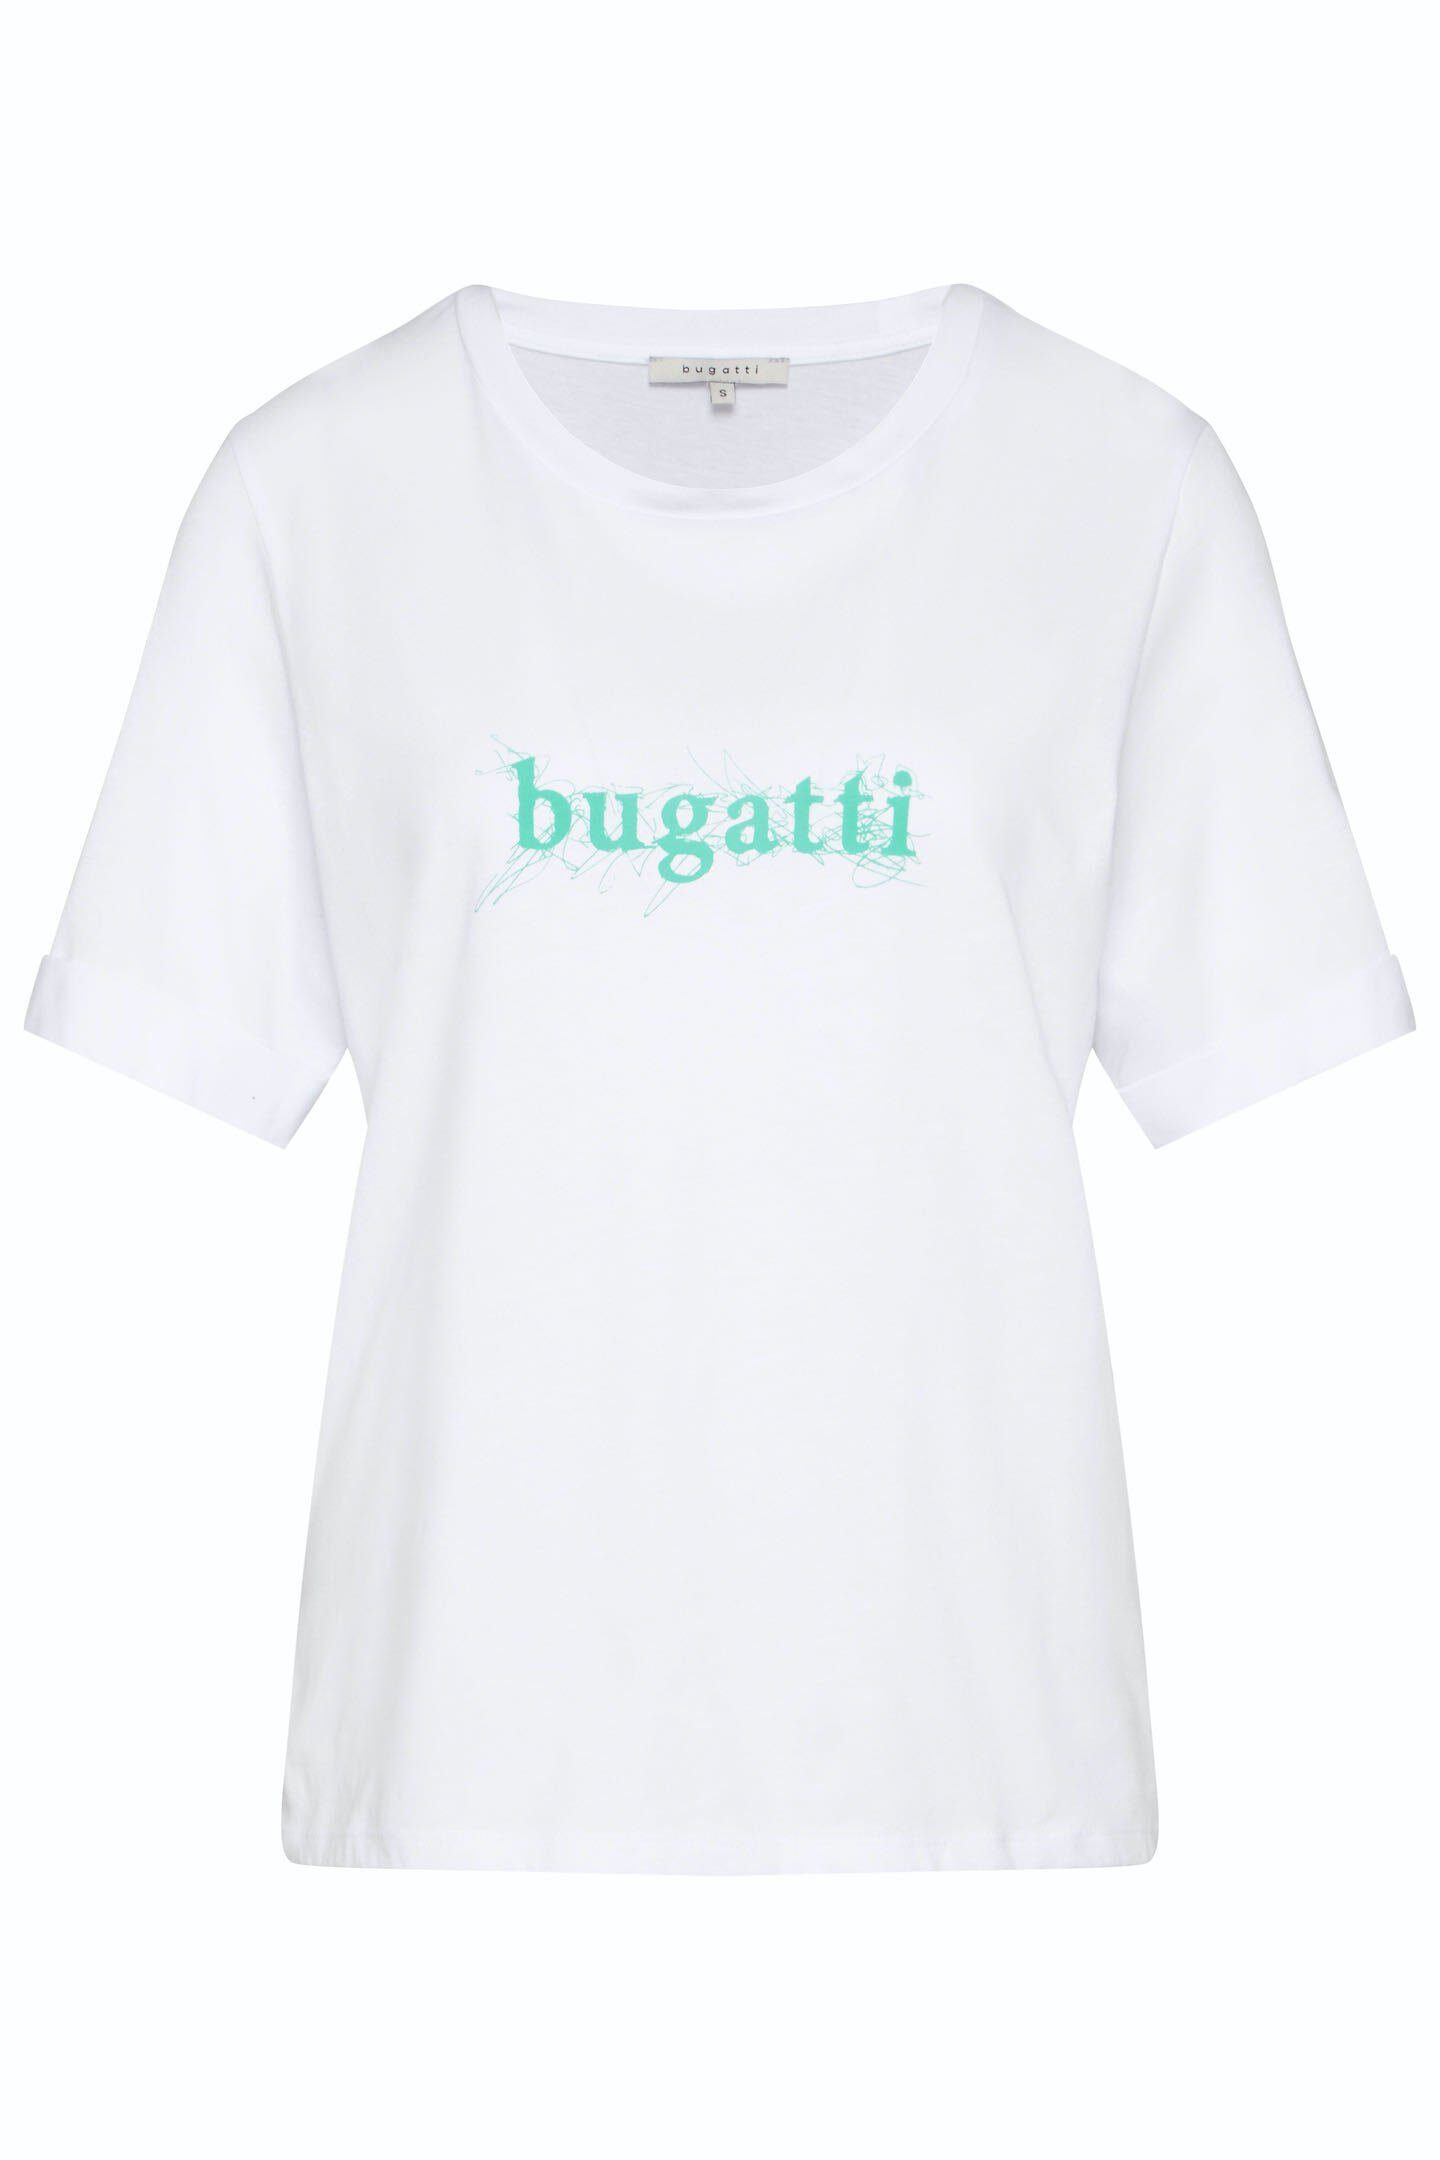 bugatti T-Shirt aus einer hochwertigen Baumwoll-Modalmischung | T-Shirts